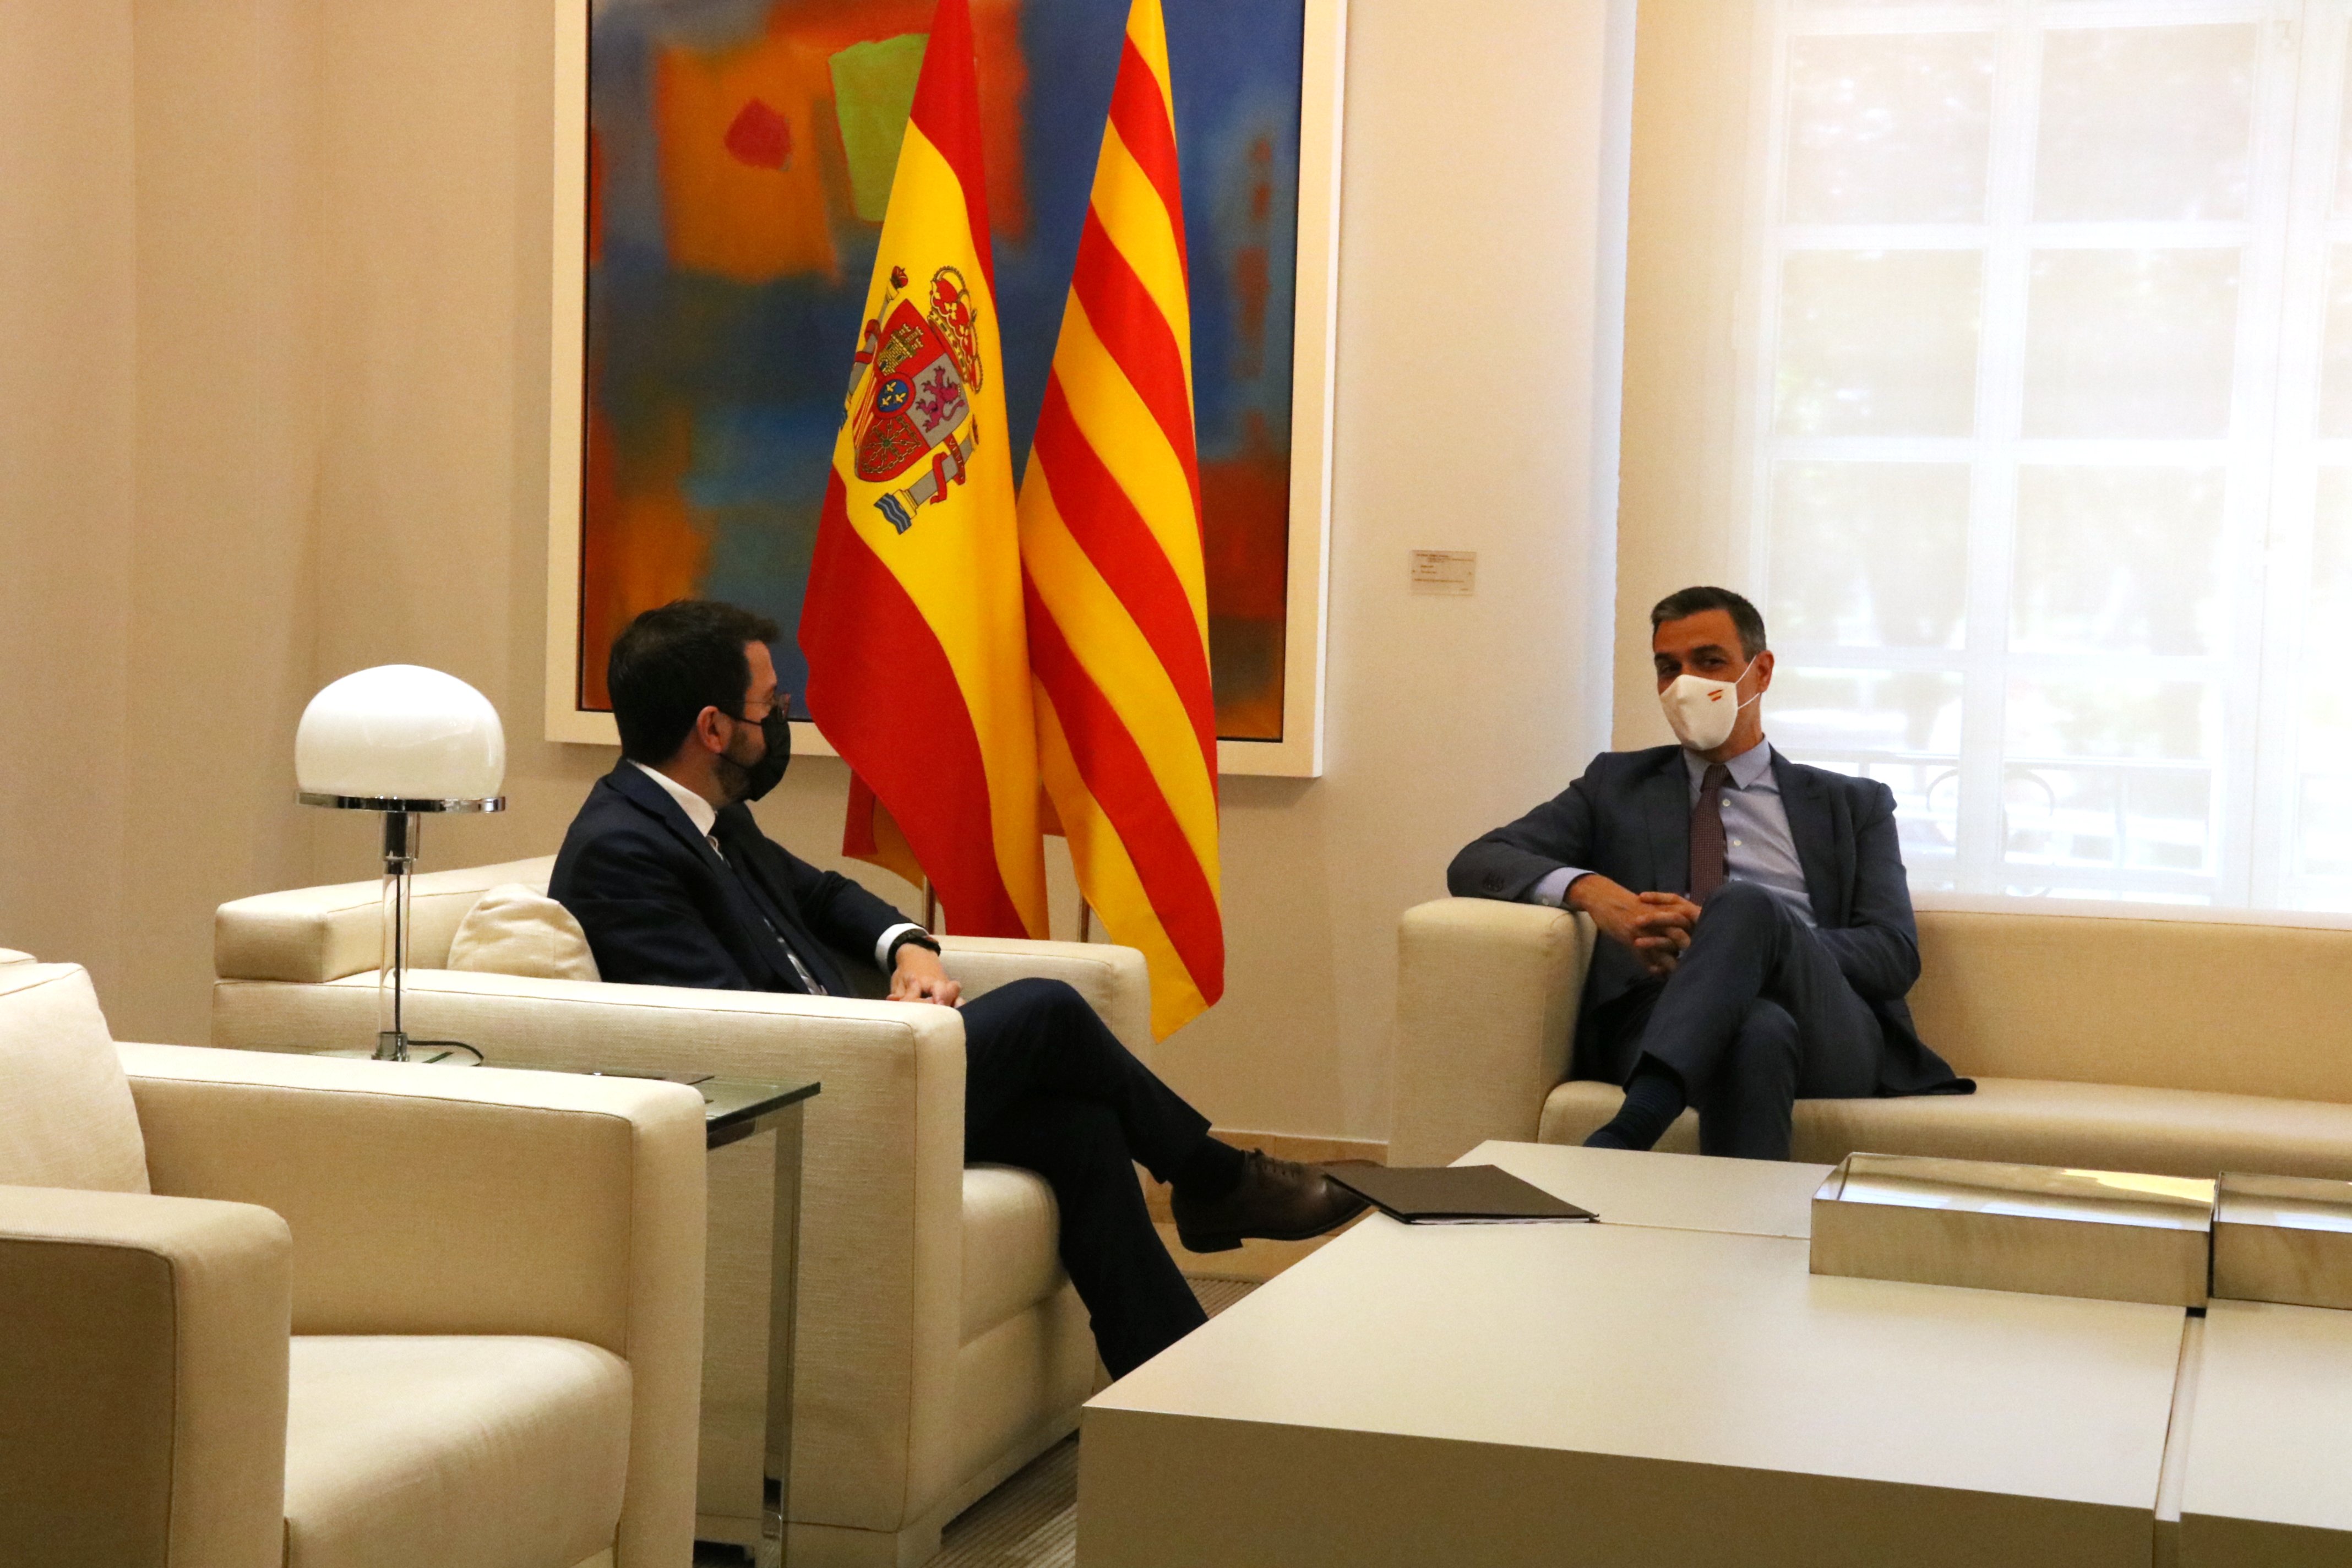 Sánchez i Aragonès es reuniran abans de la taula per fixar objectius i metodologia